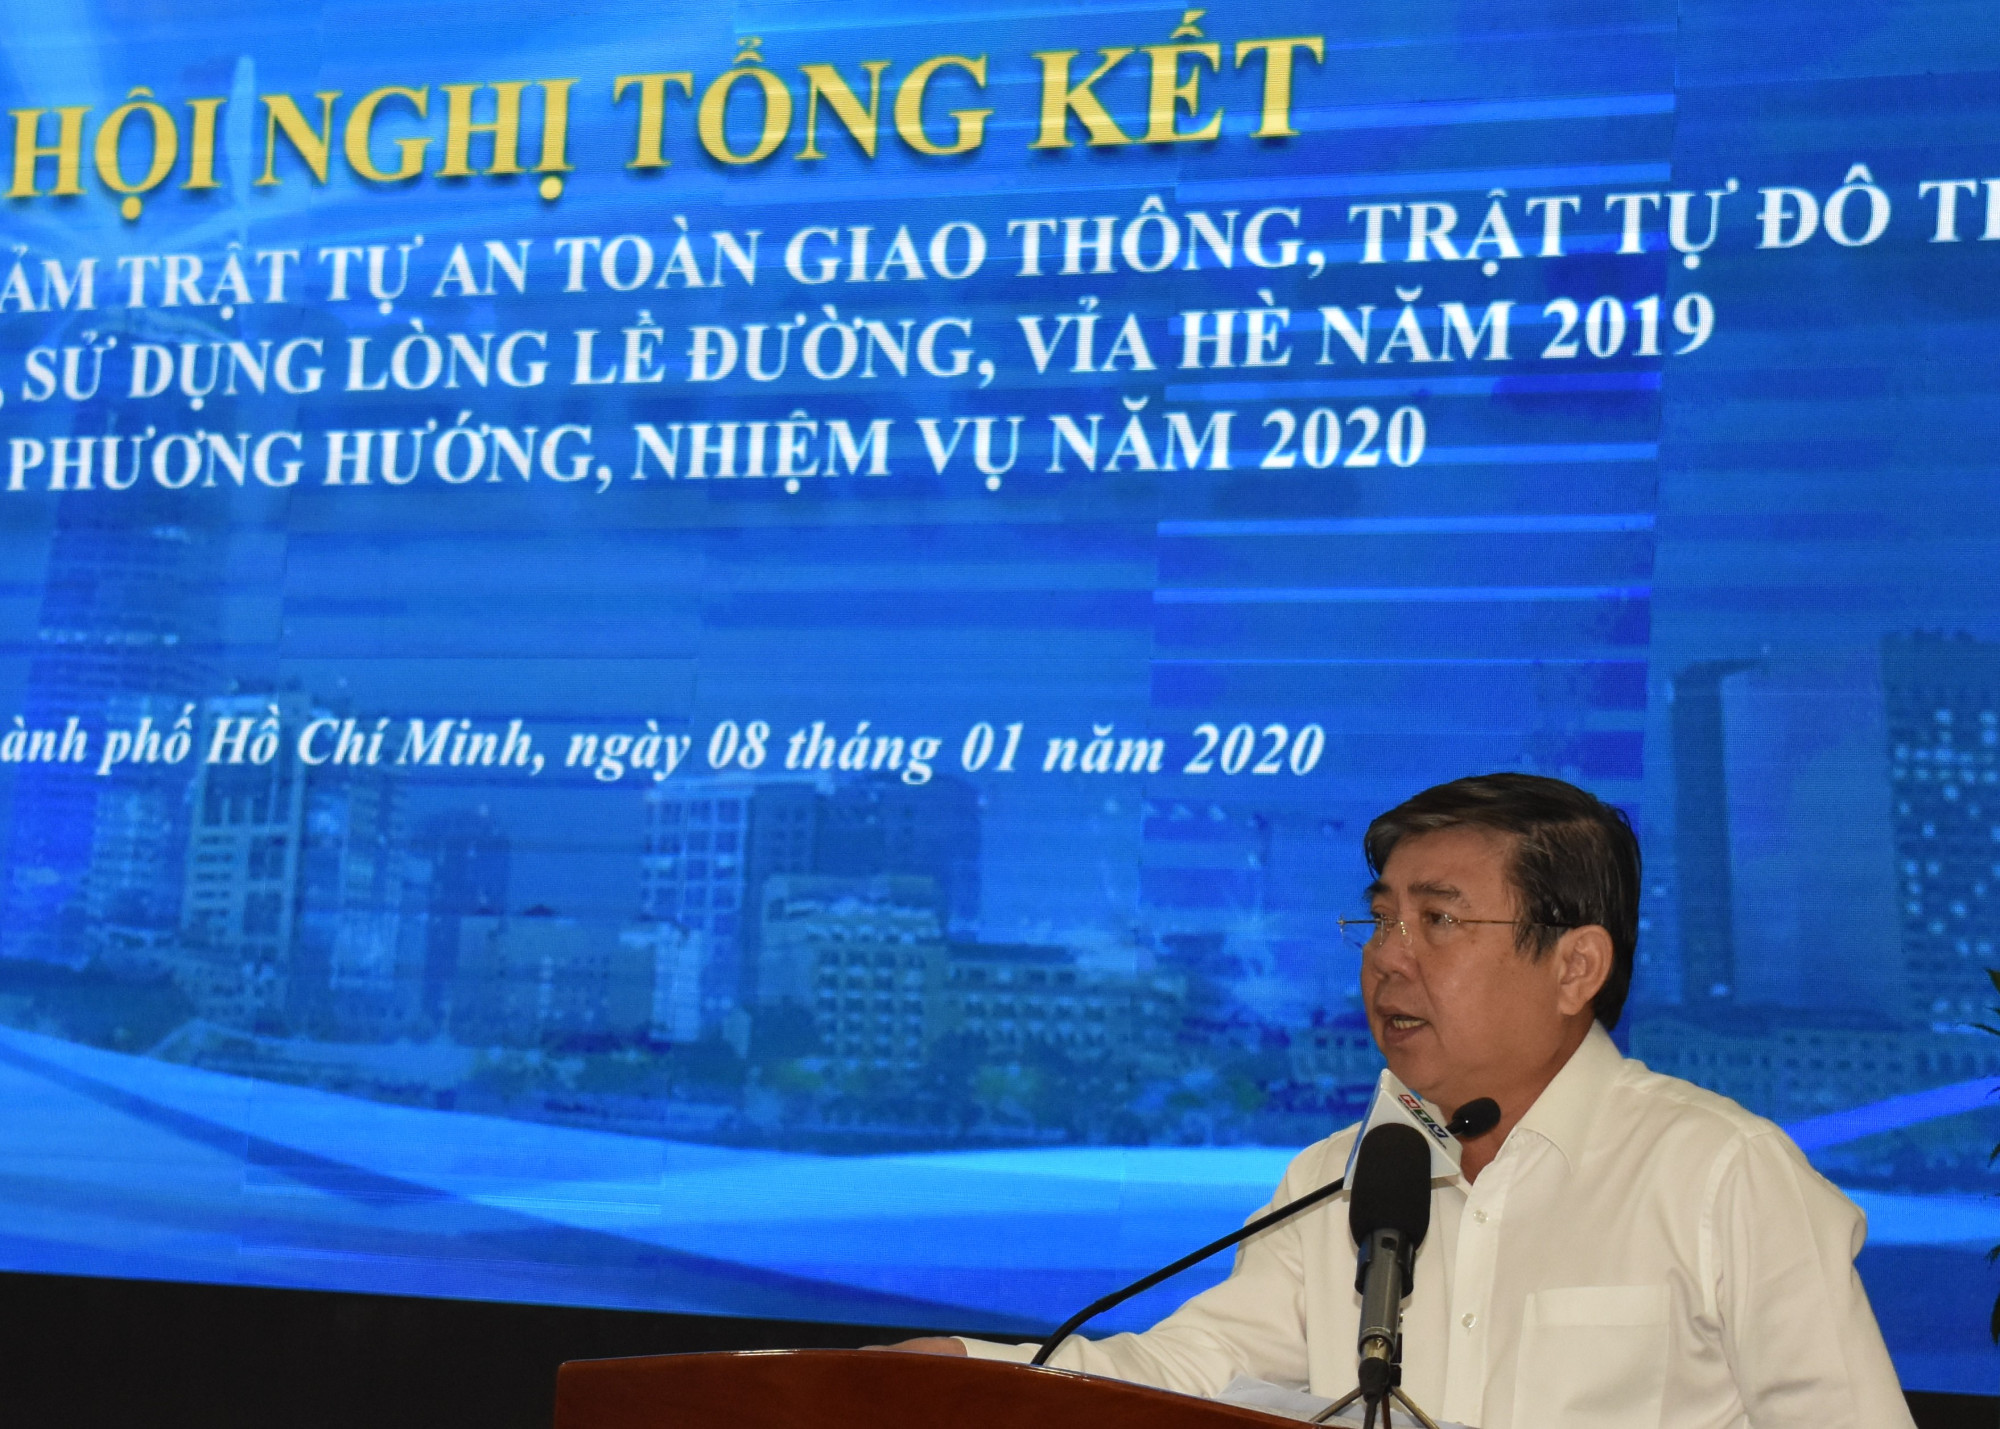 Chủ tịch UBND TPHCM Nguyễn Thành Phong cho biết, năm 2020 sẽ đẩy mạnh các hoạt động văn hóa giao thông thiết thực